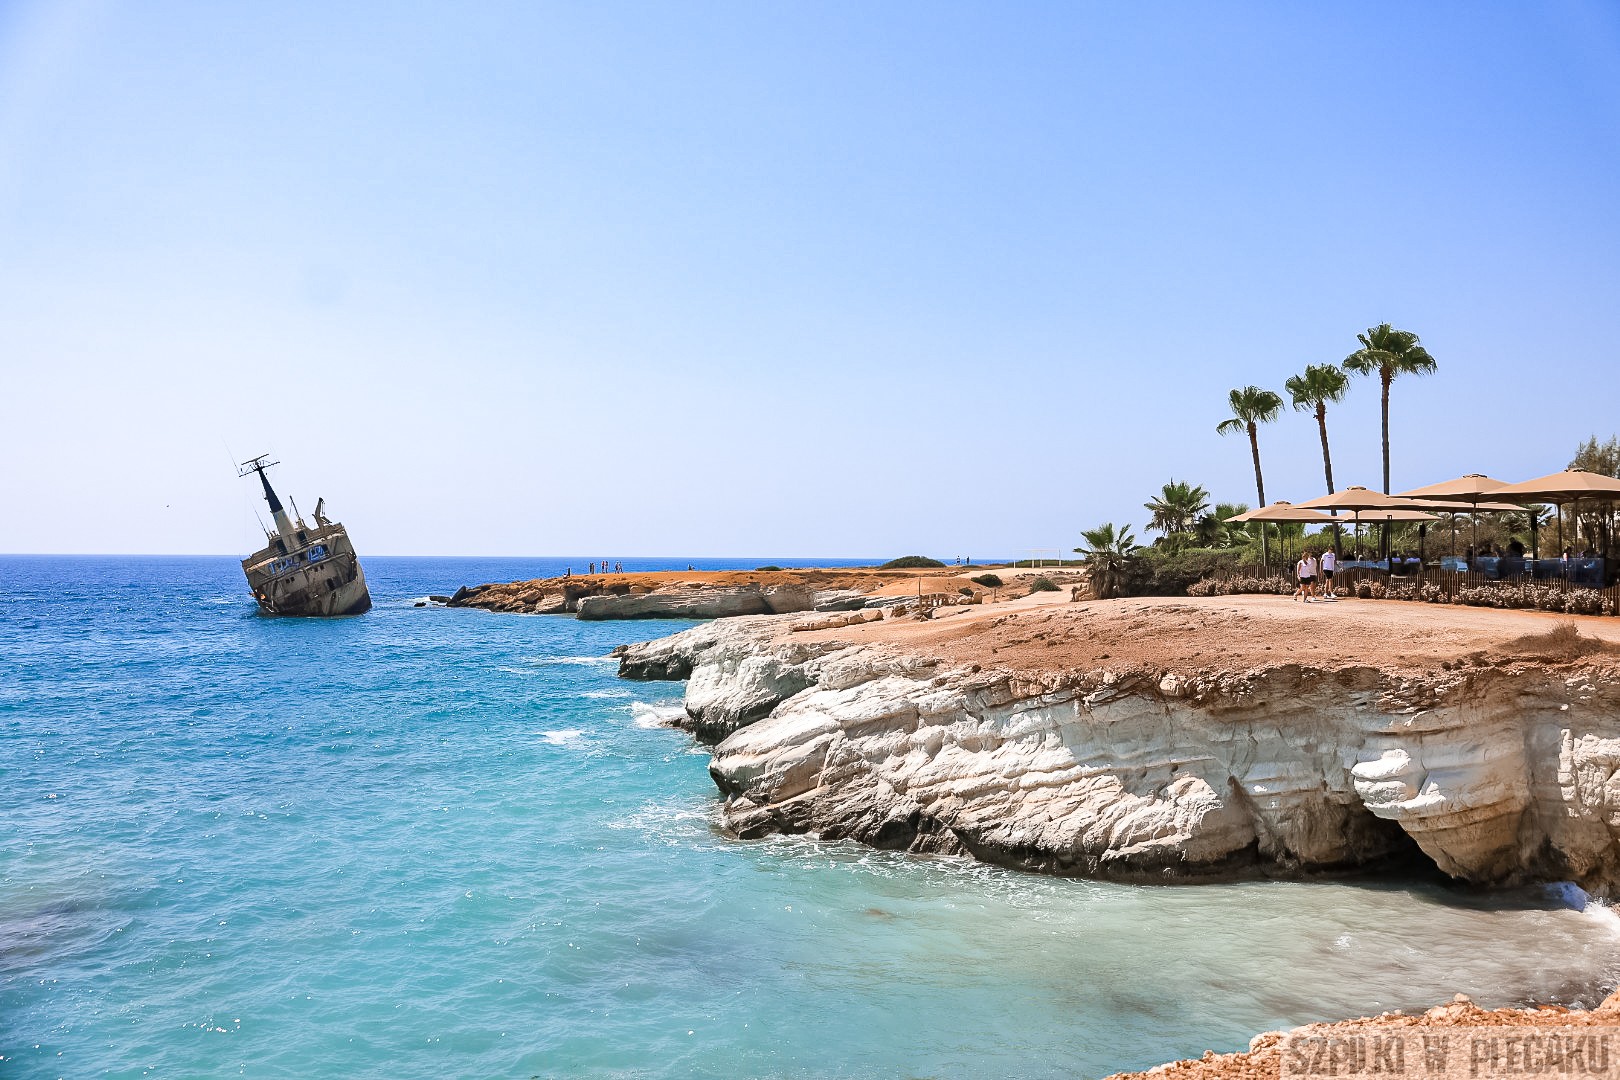 Cypr dla aktywnych – region Akamas – tam czeka na Ciebie przygoda! 5 rzeczy, których musisz doświadczyć